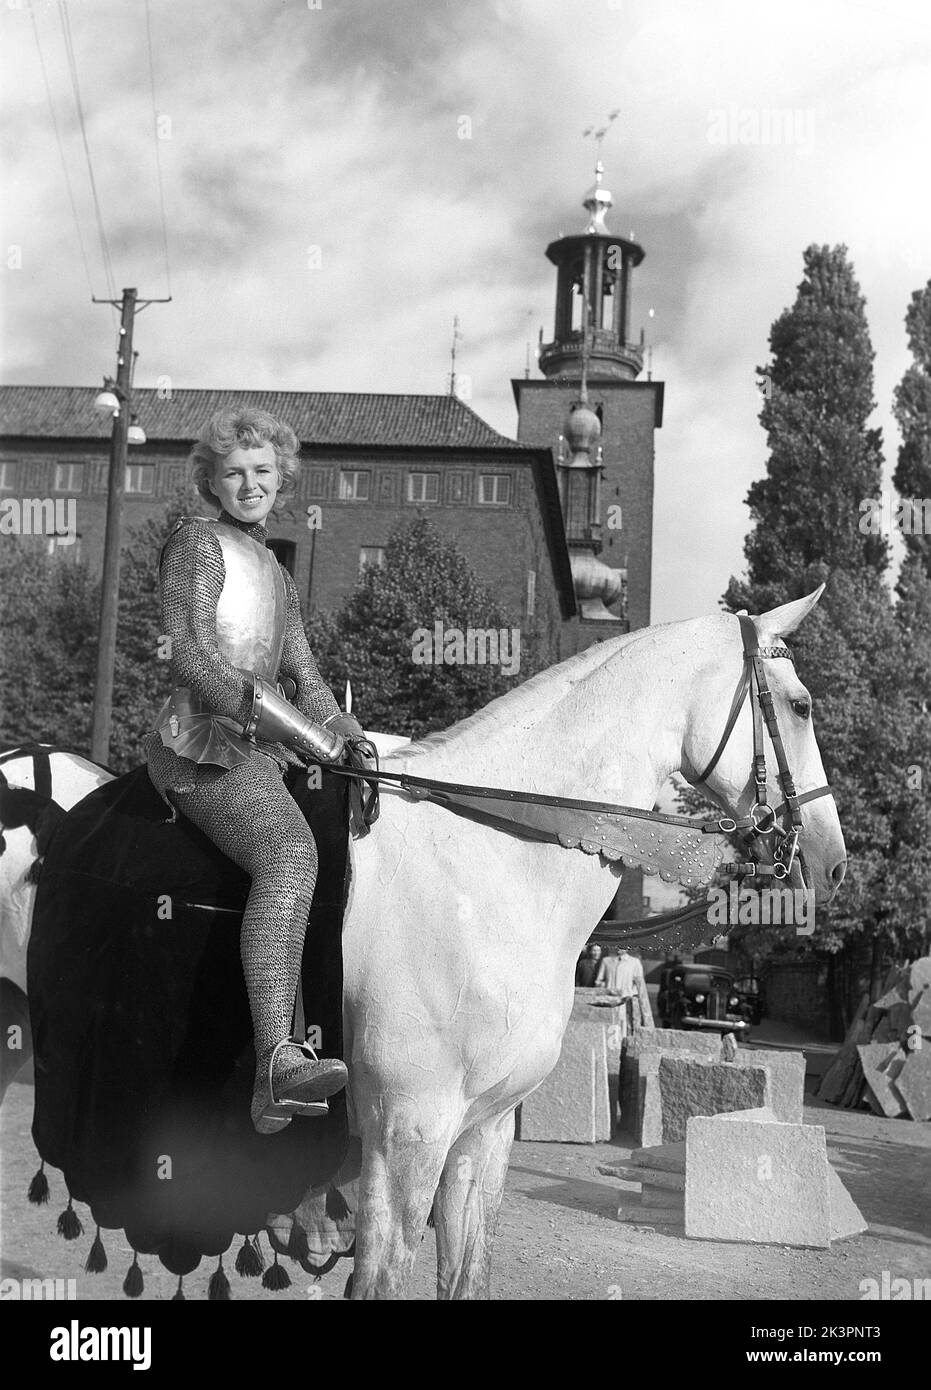 Negli anni '1940s. Il film americano Jeanne d'Arc è stato promosso per la sua prima proiezione e Kerstin Bergo è stato scelto per agire come Ingrid Bergman nel pr-stunt. Sembrava un po' Ingrid Bergman e poteva cavalcare. Sullo sfondo del municipio di Stoccolma. Stoccolma Svezia 1949. Kristoffersson rif AO17-4 Foto Stock